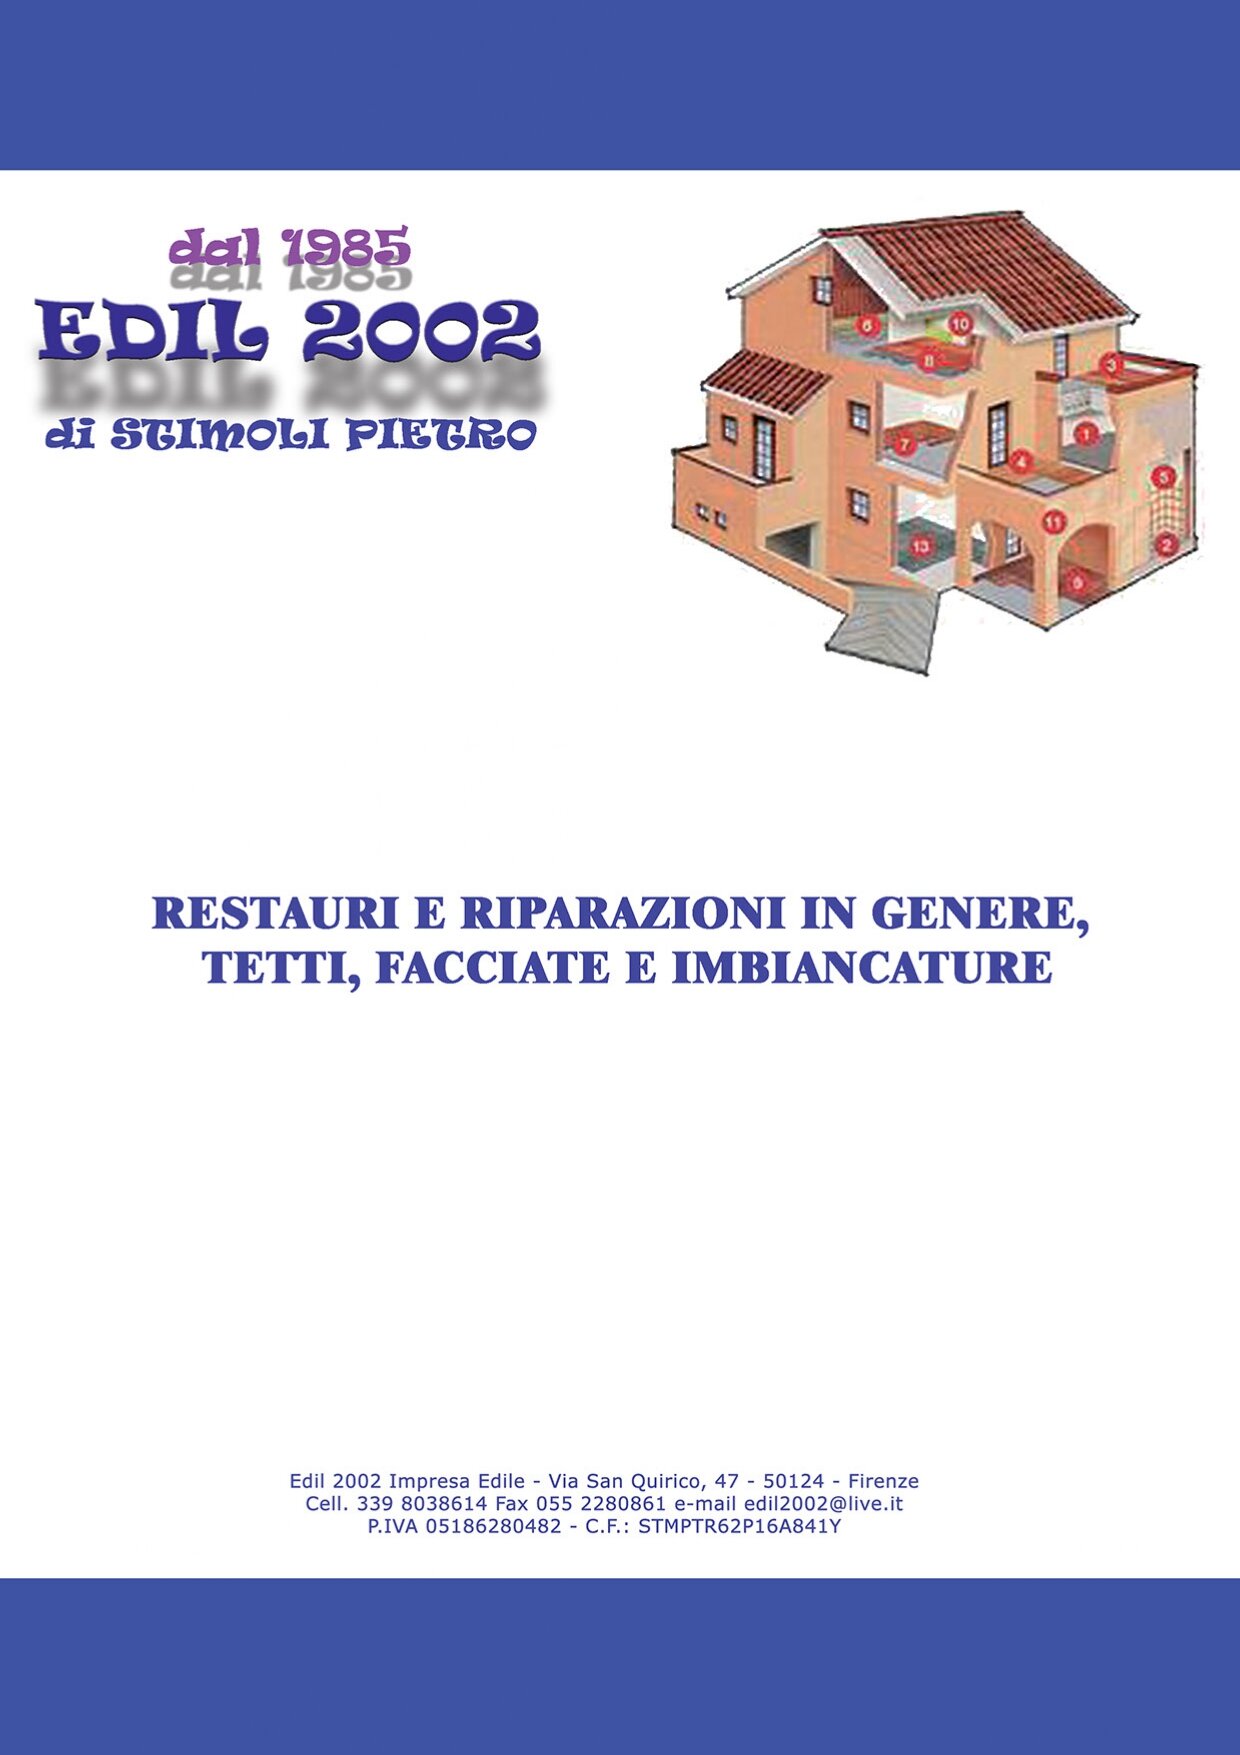 Edil 2002 Stimoli Pietro cover photo